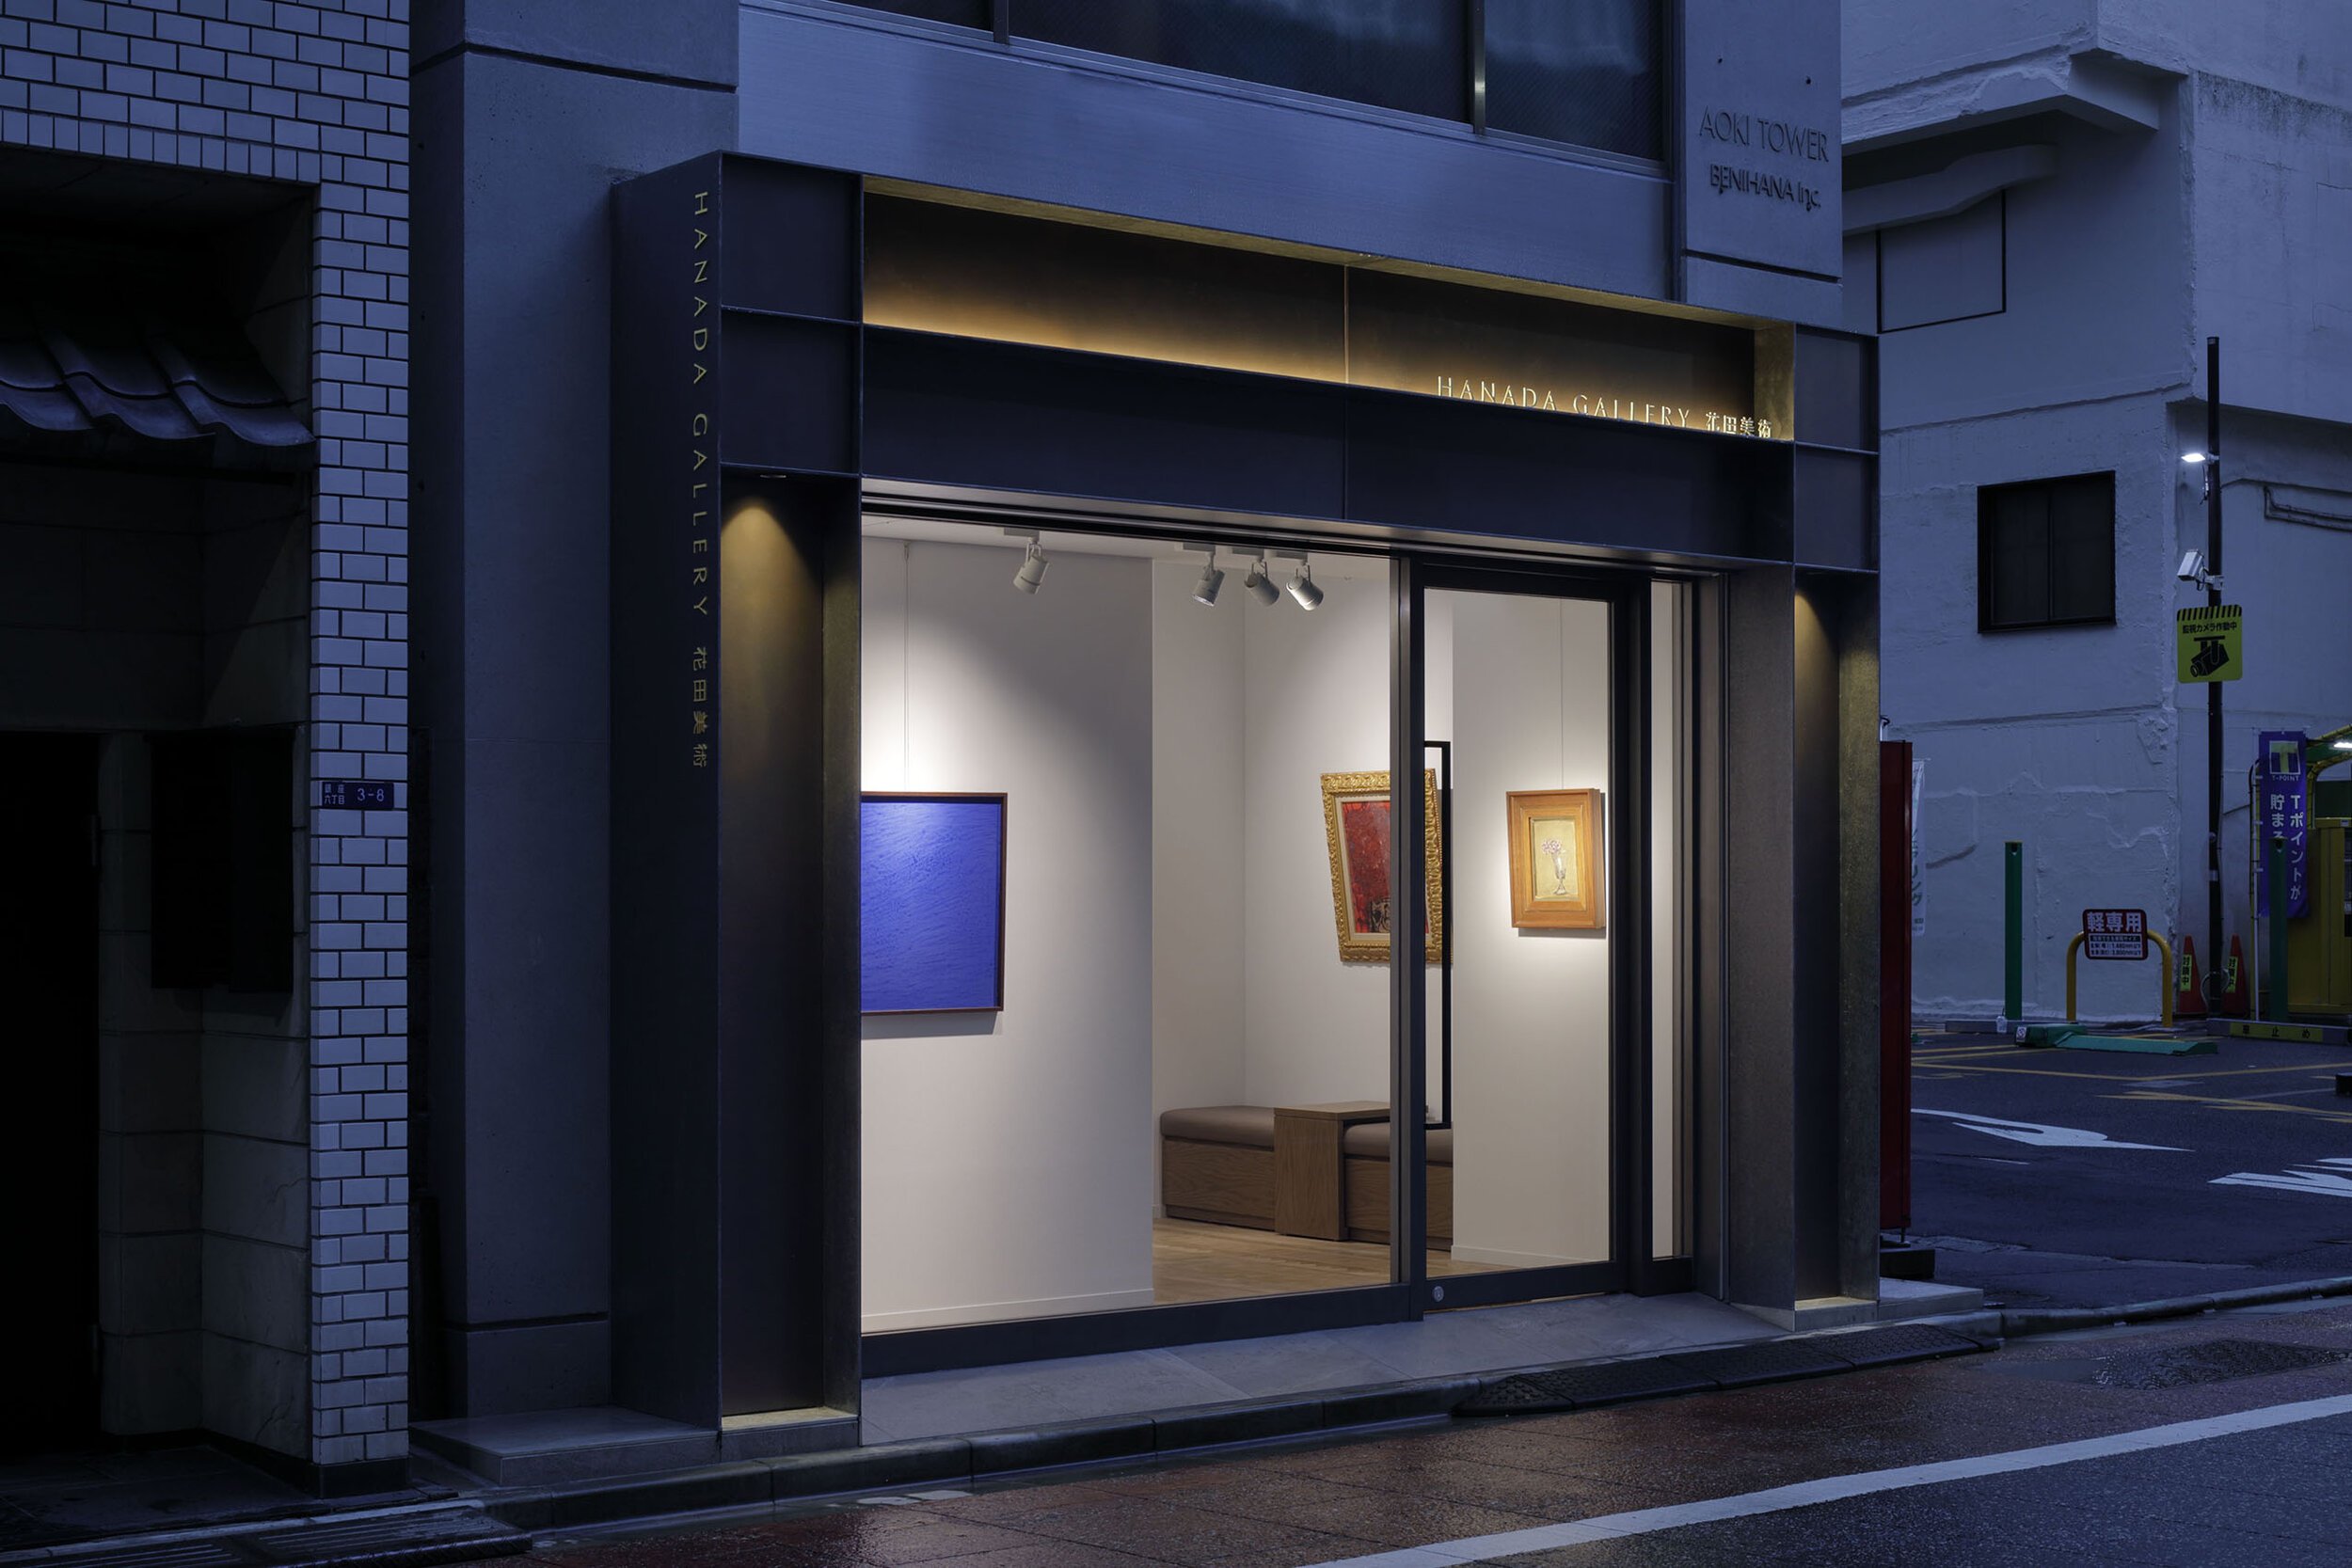  Roito（ロイト）の神田亮平がデザインした花田美術Hanada Galleryの外装デザイン 